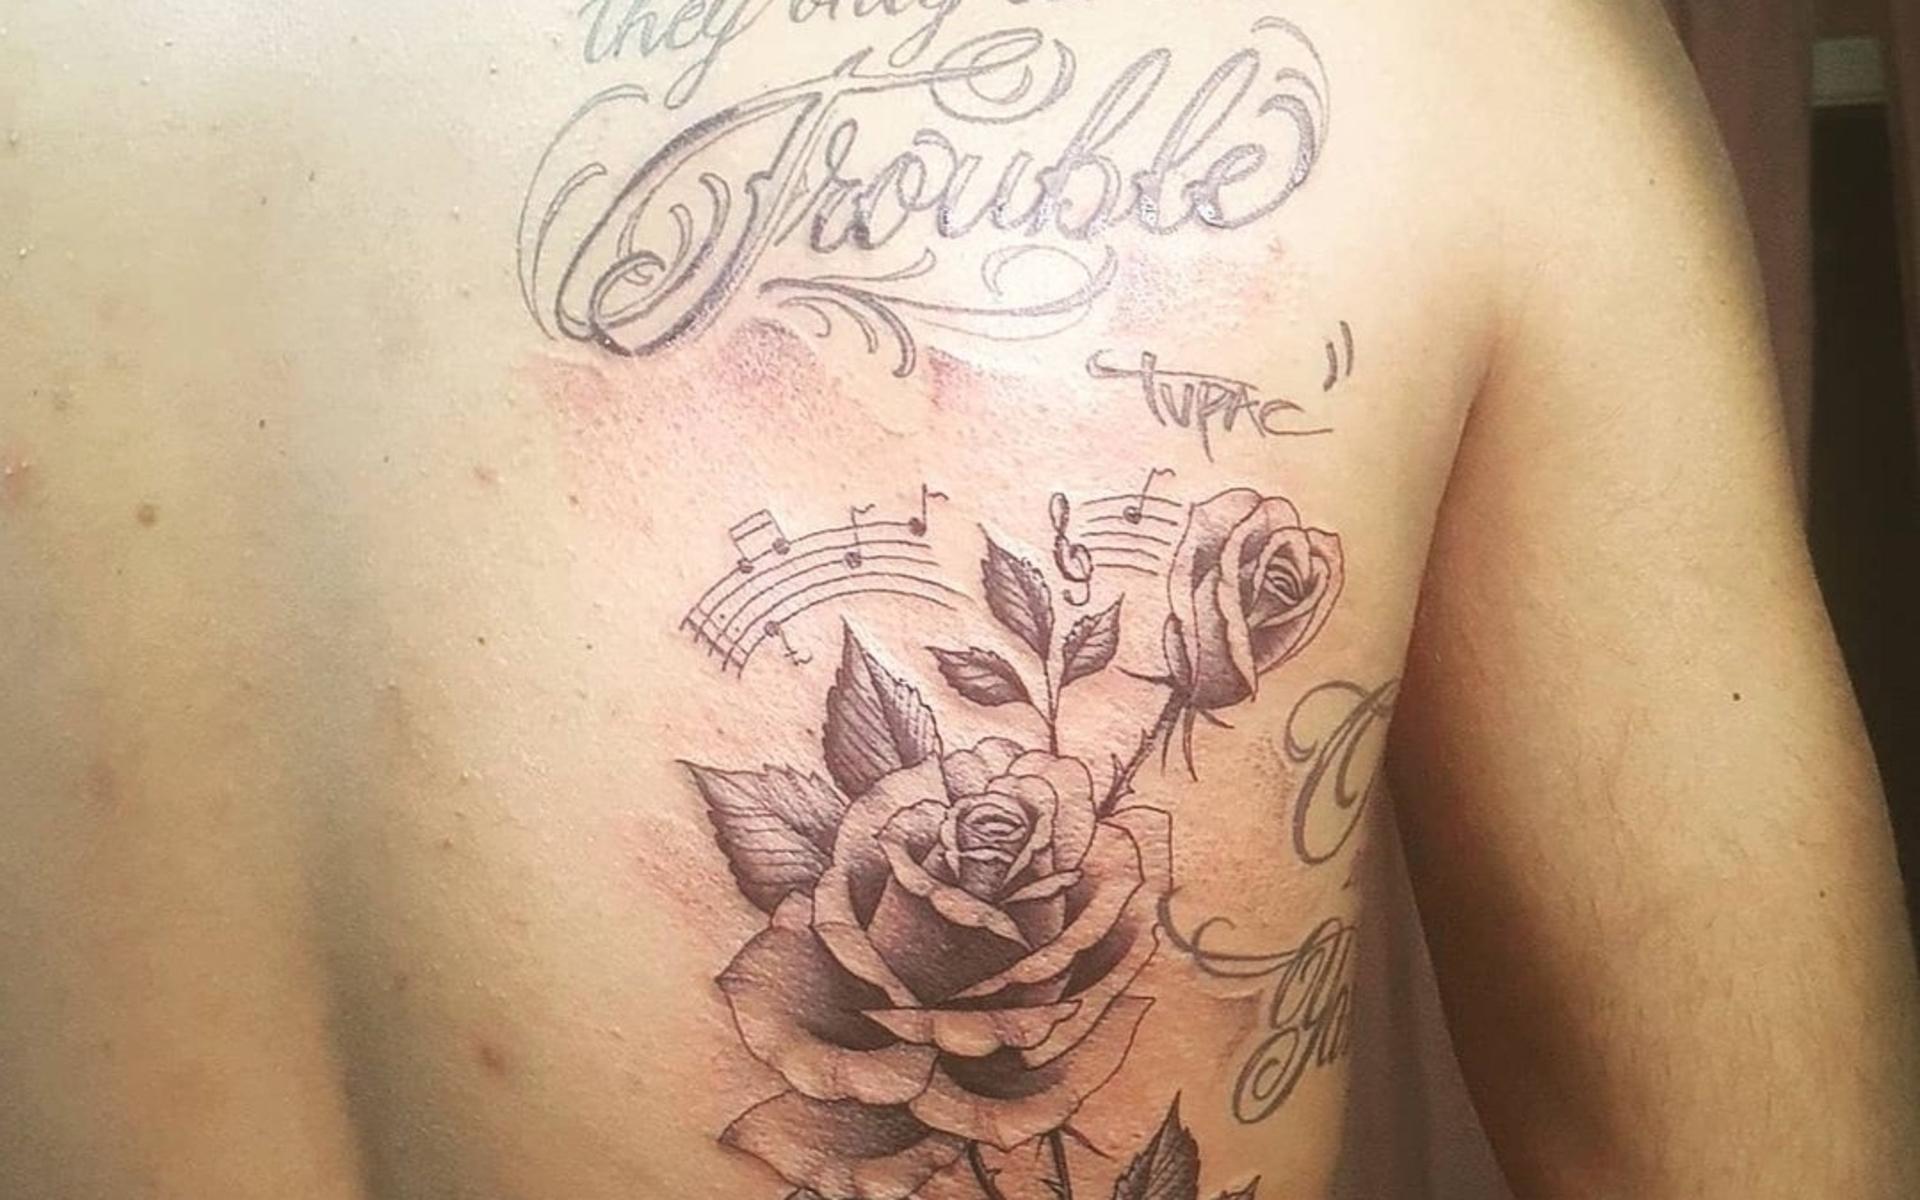 Naser Keqaj: ”Denna är en av mina bästa. Alla mina tatueringar har en koppling till varandra, dom två rosorna är mina 2 barn jag har hemma och noterna betyder att musik är jag, mitt redskap att prata om mitt mående. Tatueraren fick fria händer”. 